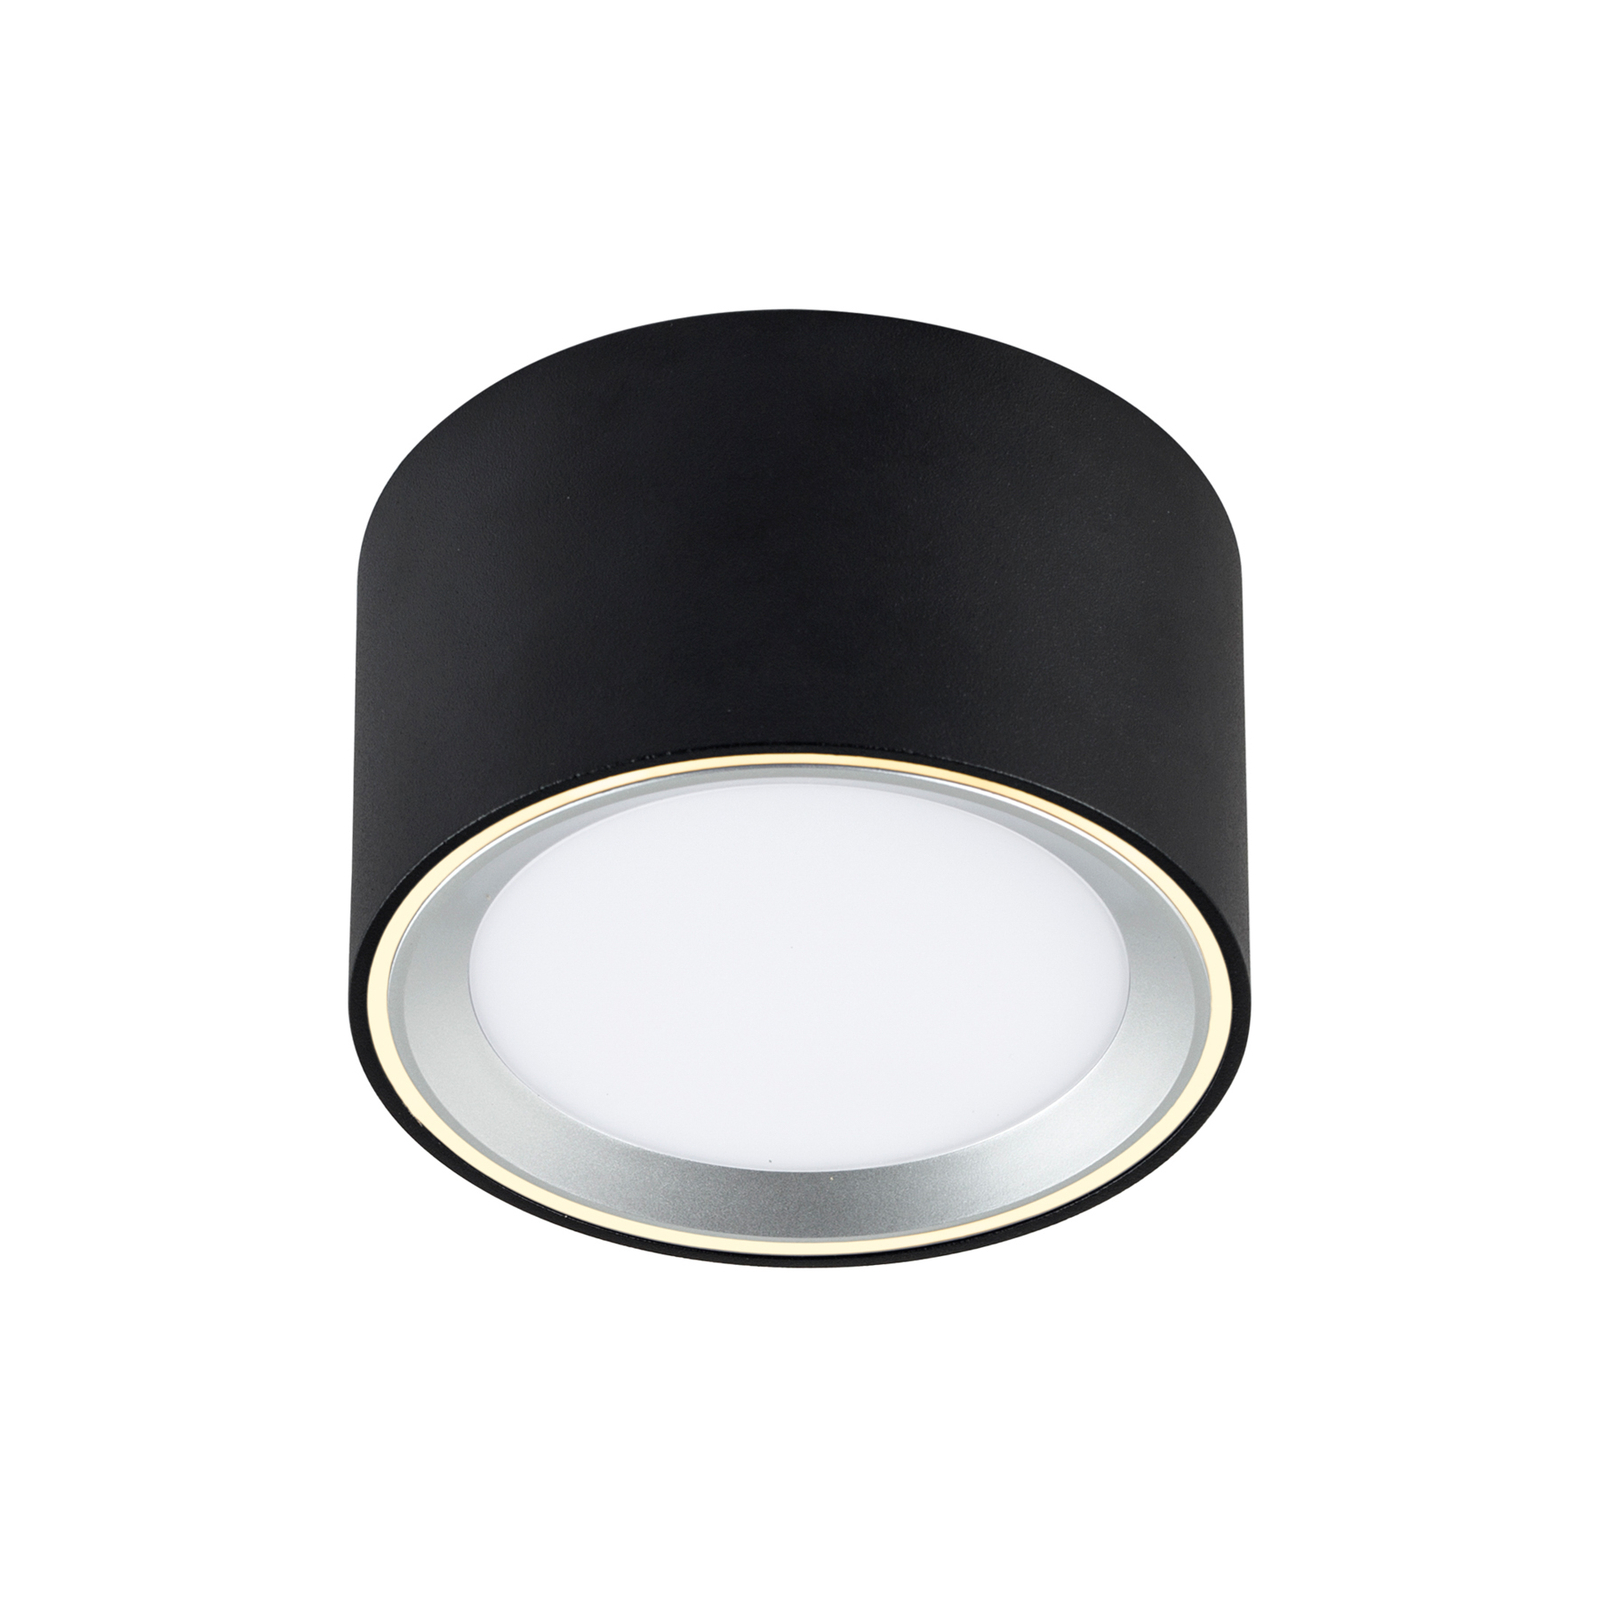 LED downlight Fallon 3-step-dim, zwart/staal